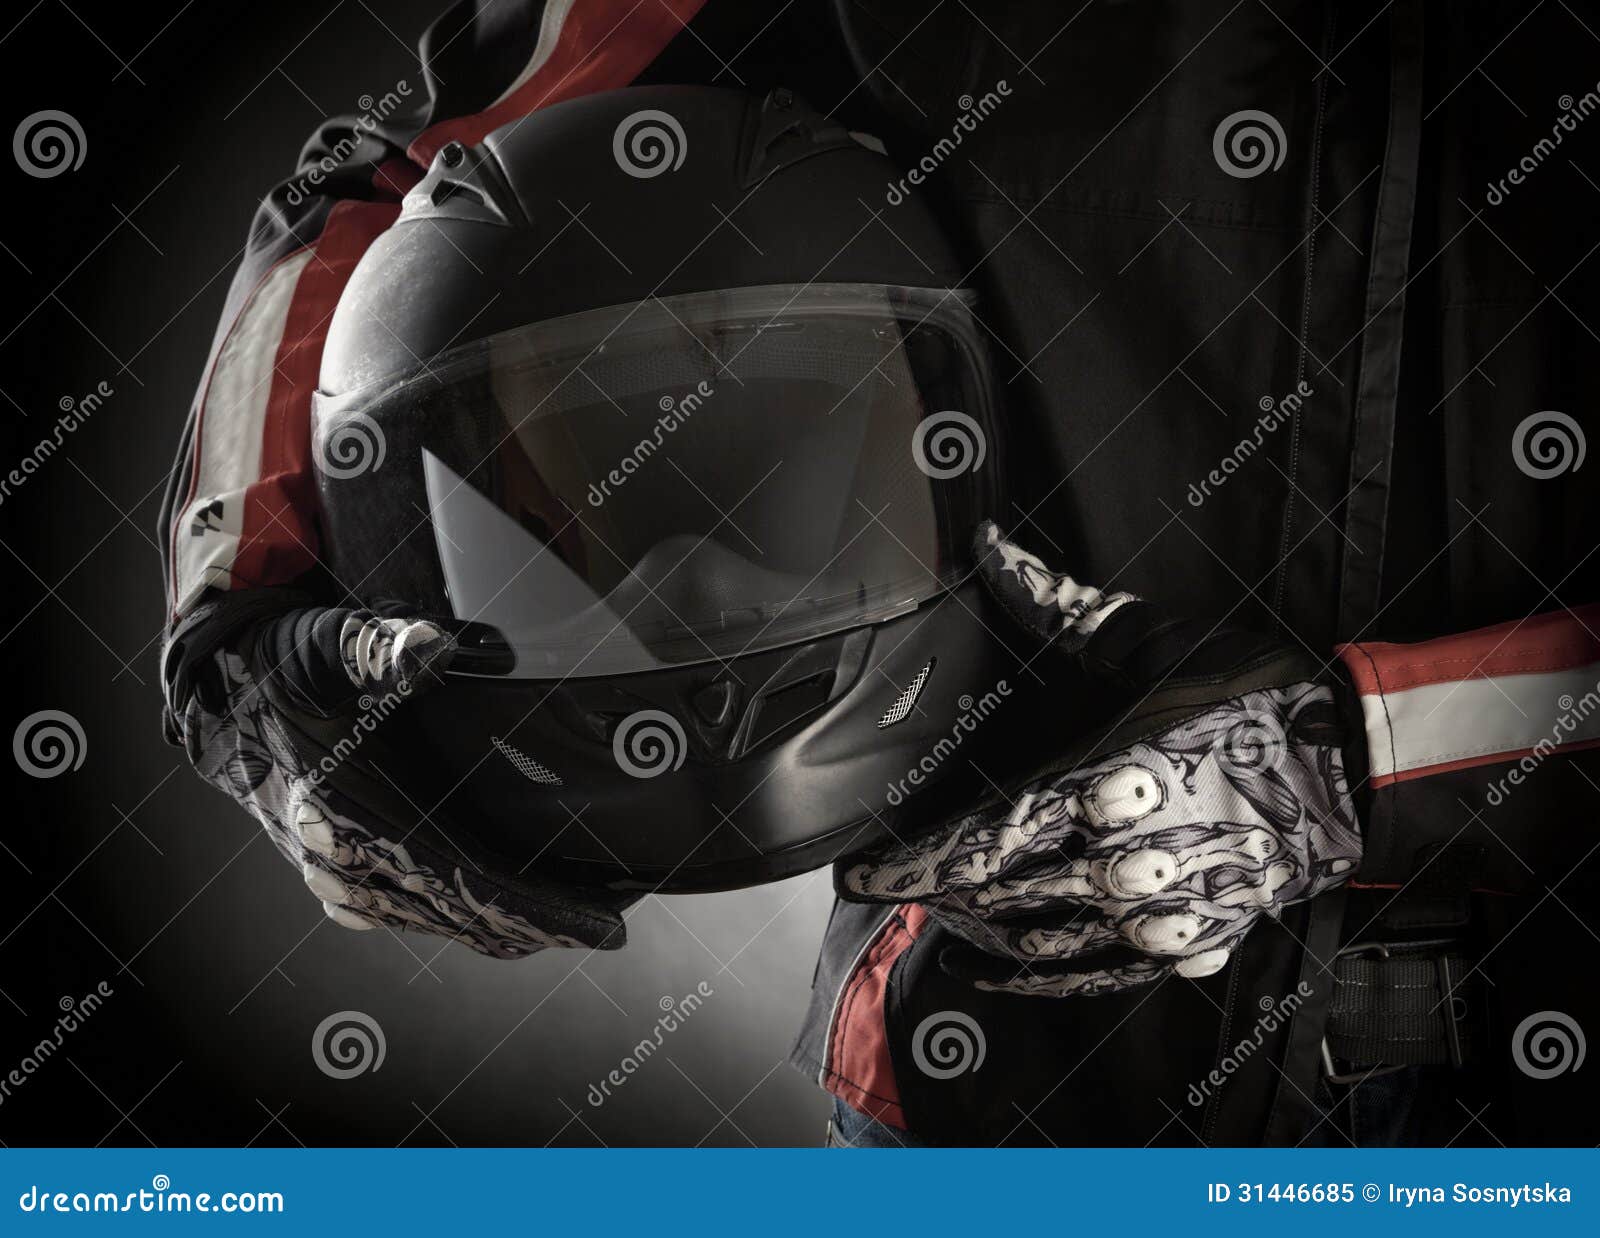 motorcyclist with helmet in his hands. dark background